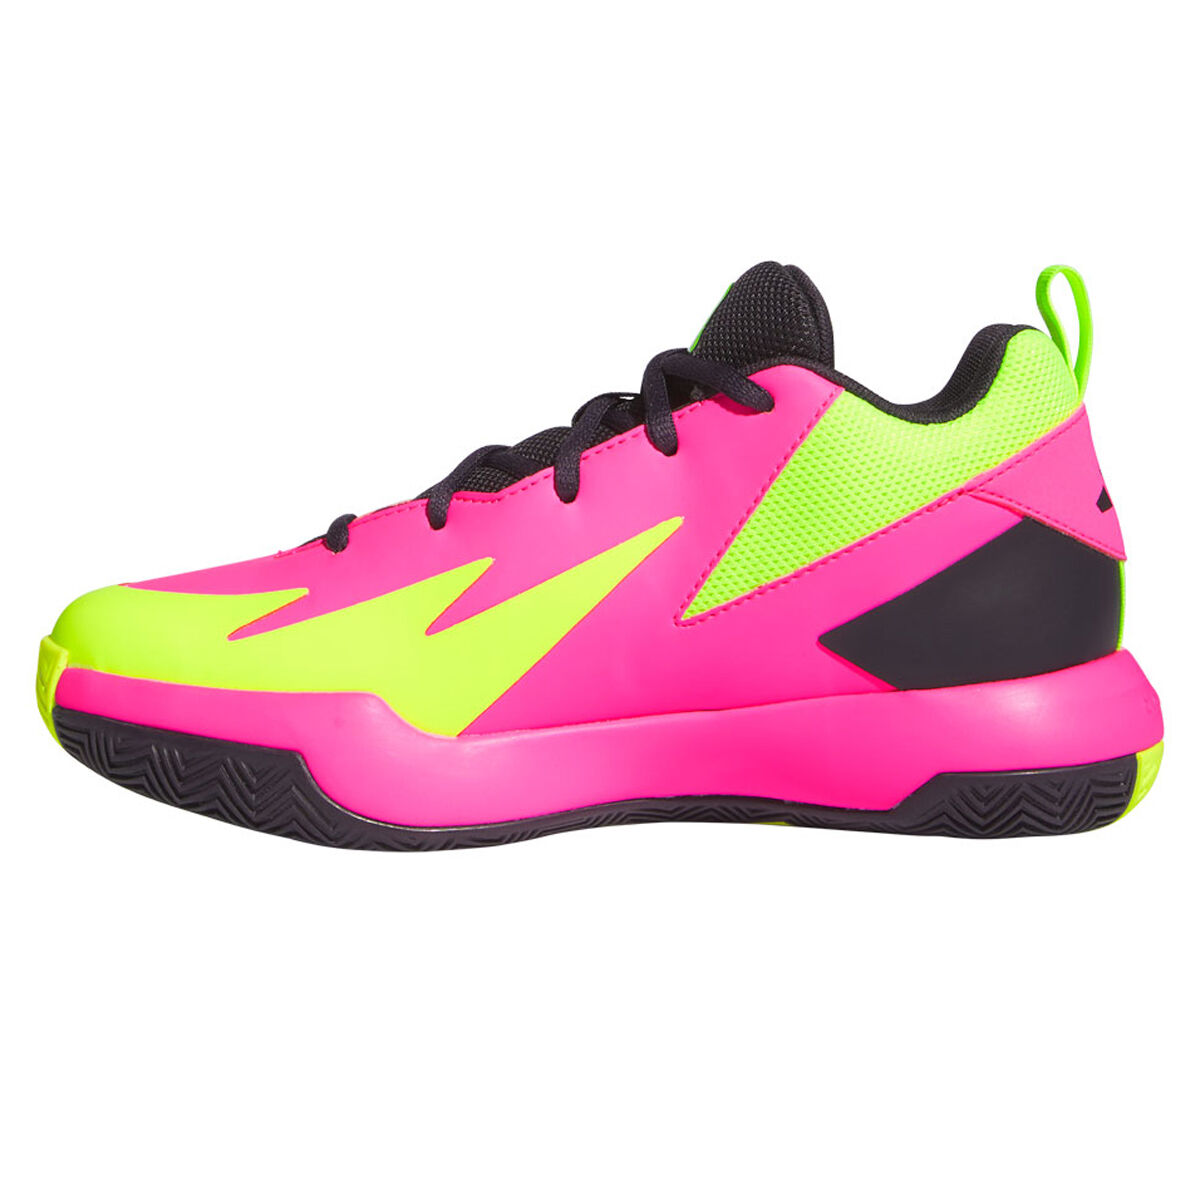 adidas Cross 'Em Up Select Wide GS Kids Basketball Shoes Pink/Black US 4, Pink/Black, rebel_hi-res